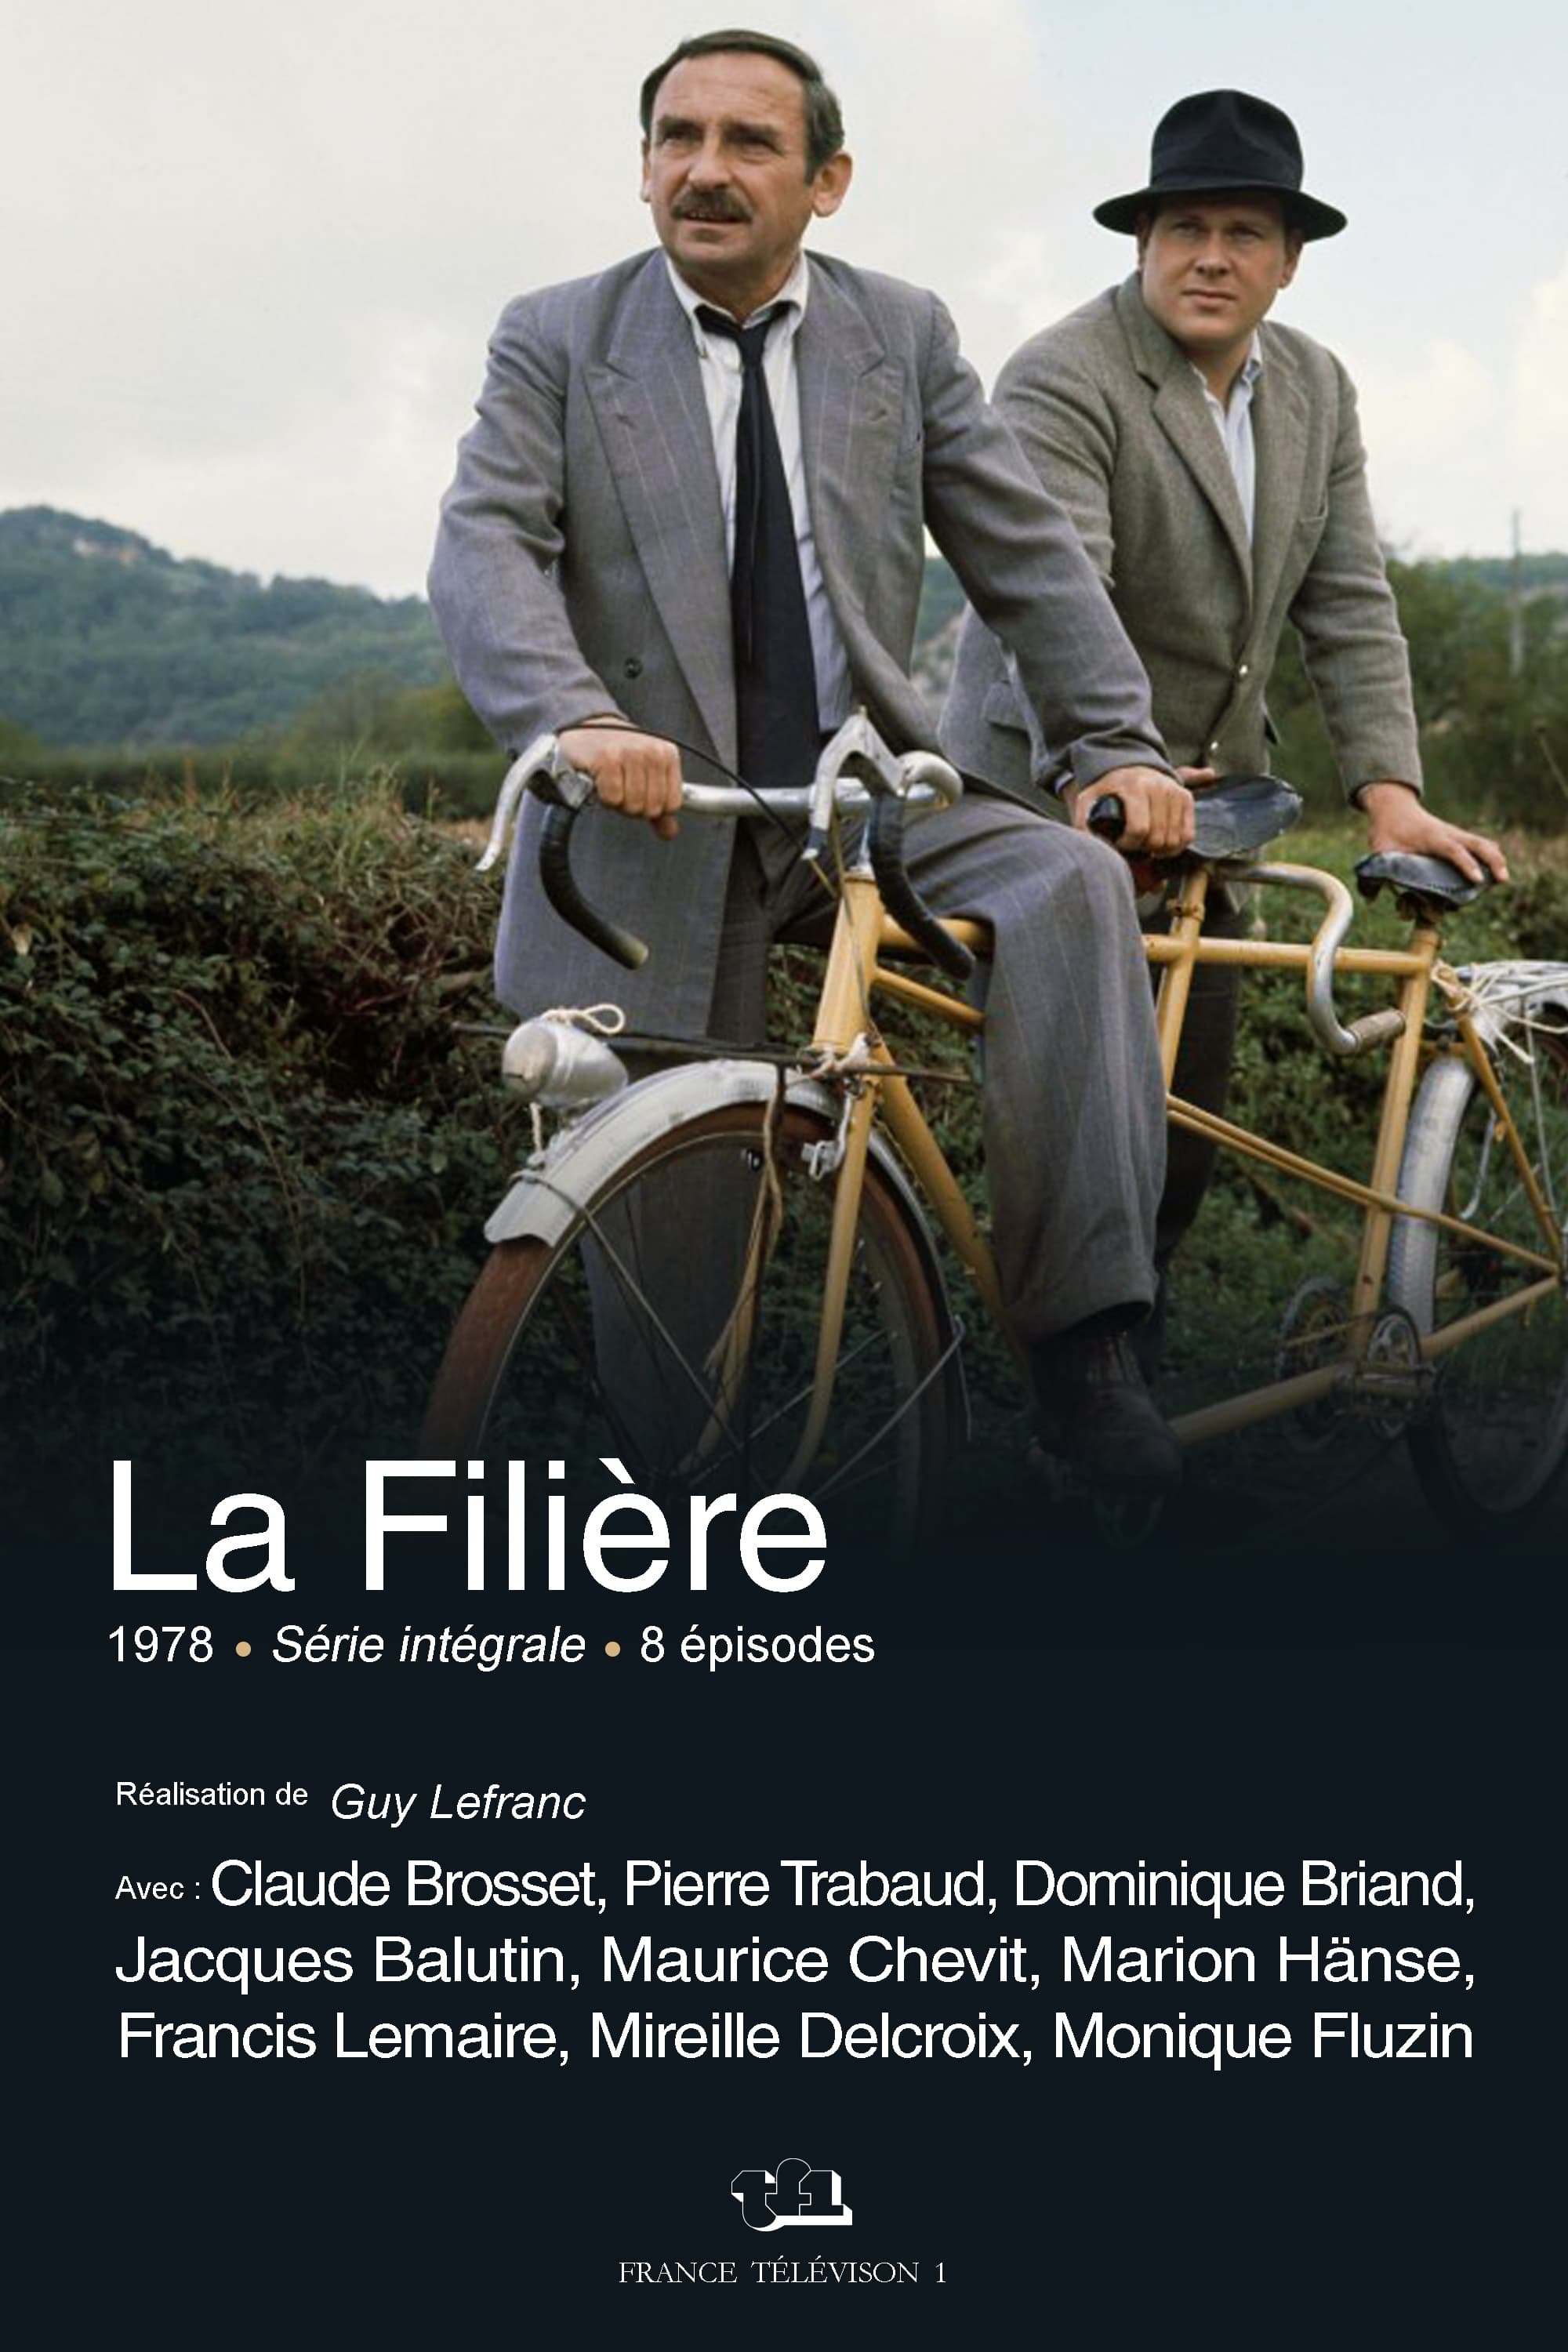 La Filière (1978)